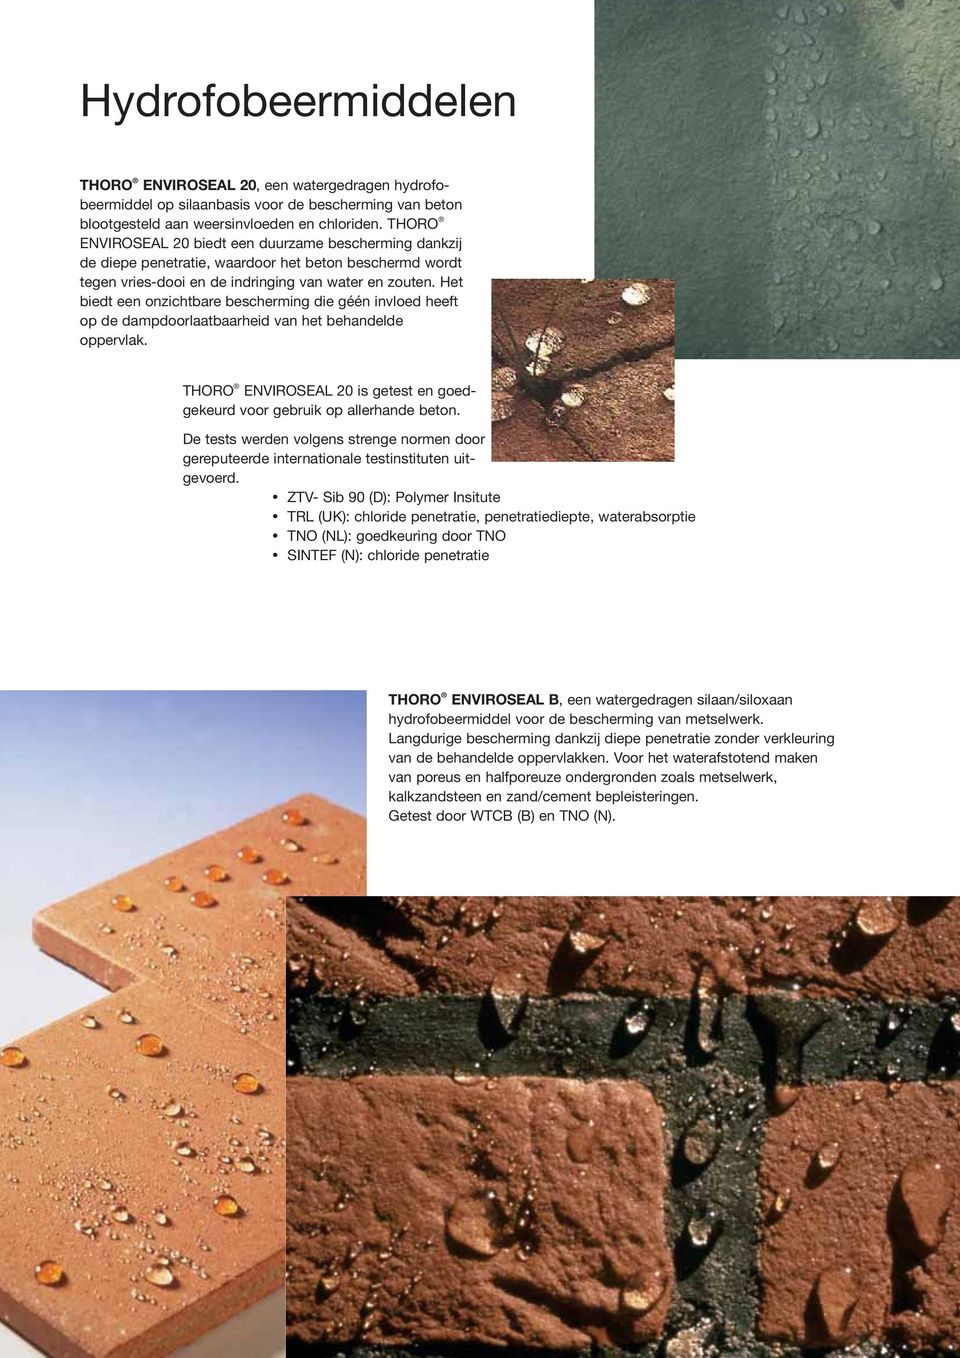 Het biedt een onzichtbare bescherming die géén invloed heeft op de dampdoorlaatbaarheid van het behandelde oppervlak. THORO ENVIROSEAL 20 is getest en goedgekeurd voor gebruik op allerhande beton.